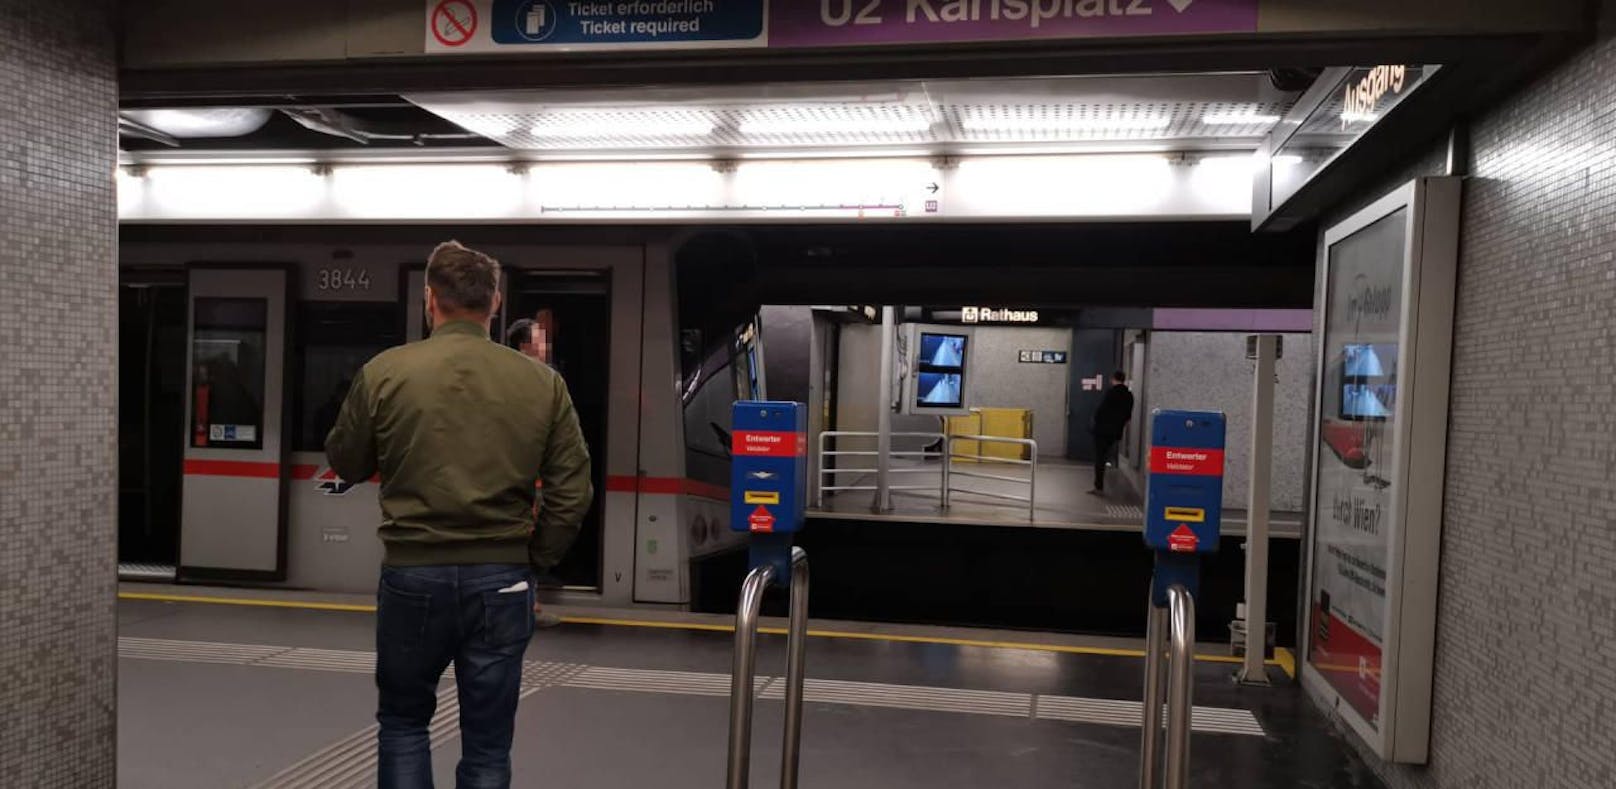 Die U2 bleibt ab 2021 zwischen Schottentor und Karlsplatz zwei Jahre lang gesperrt.